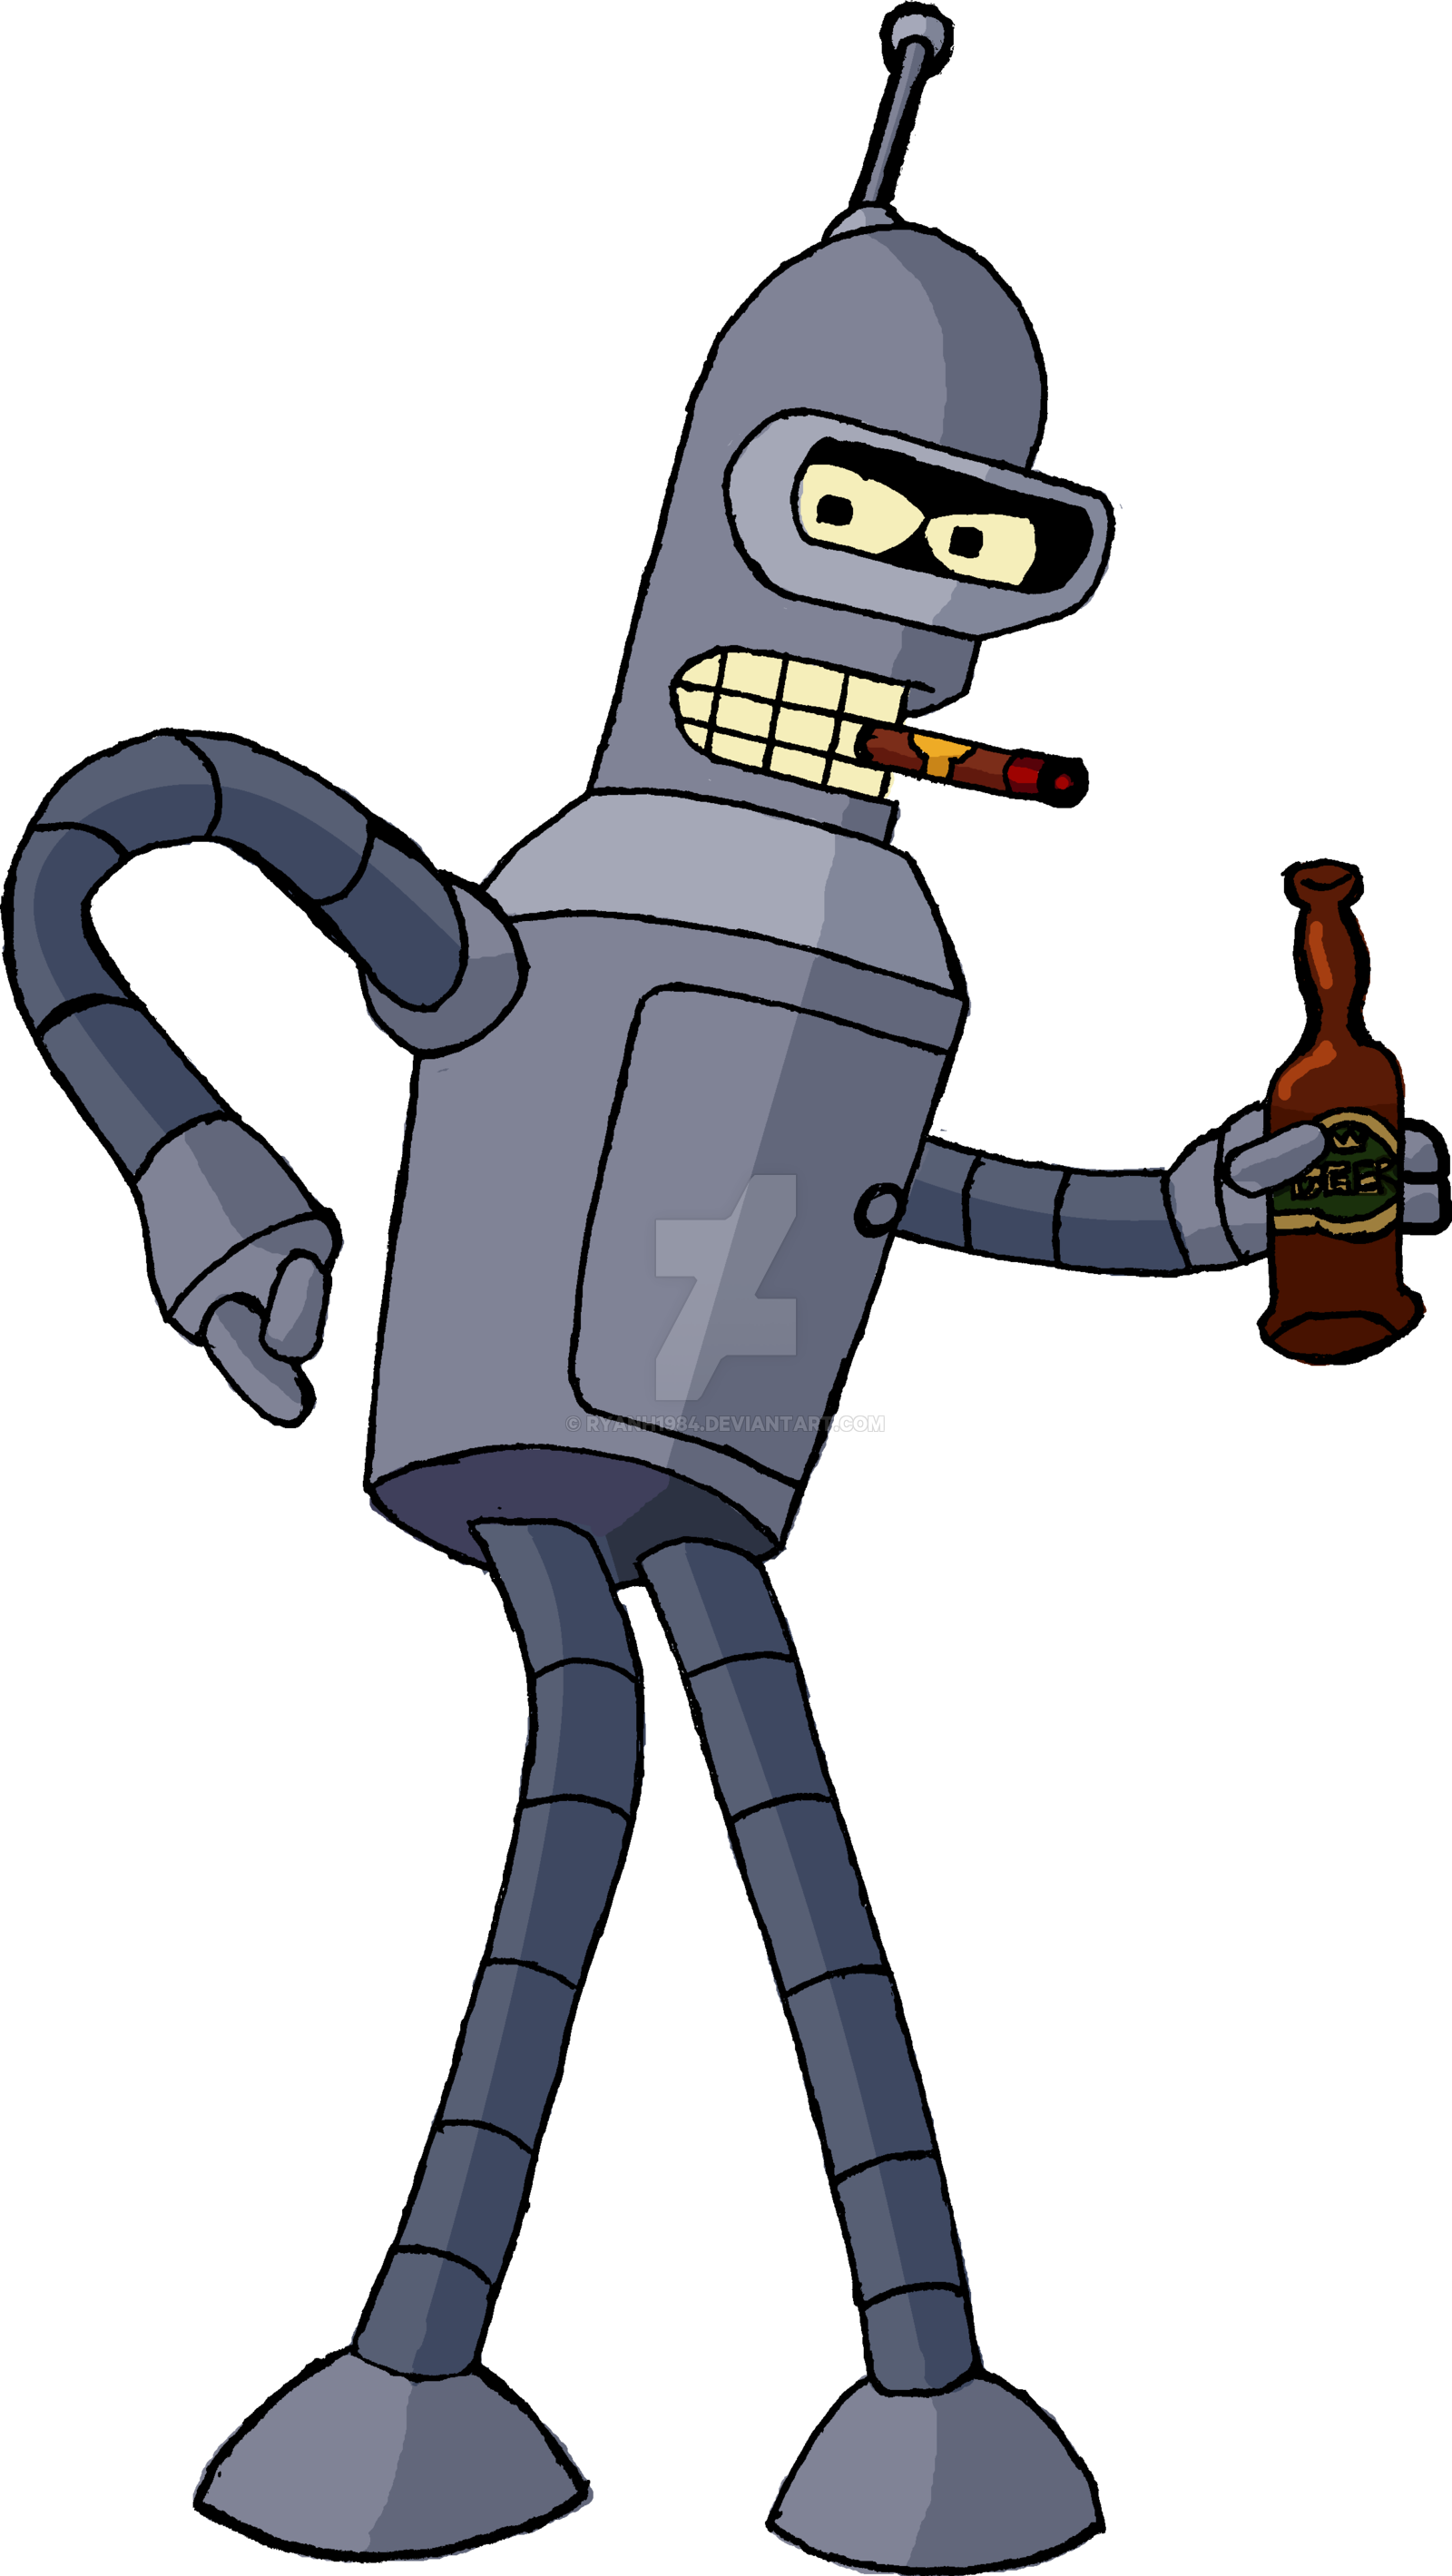 Futurama Robot PNG Free Image